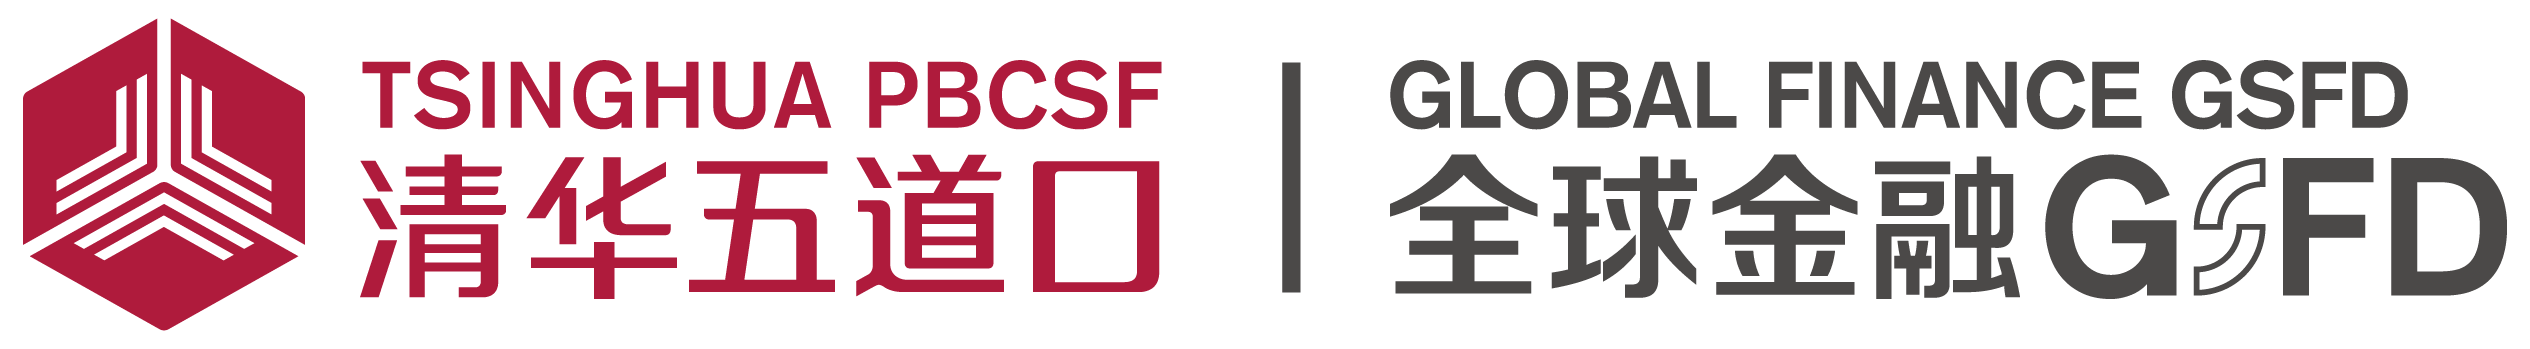 全球金融GSFD